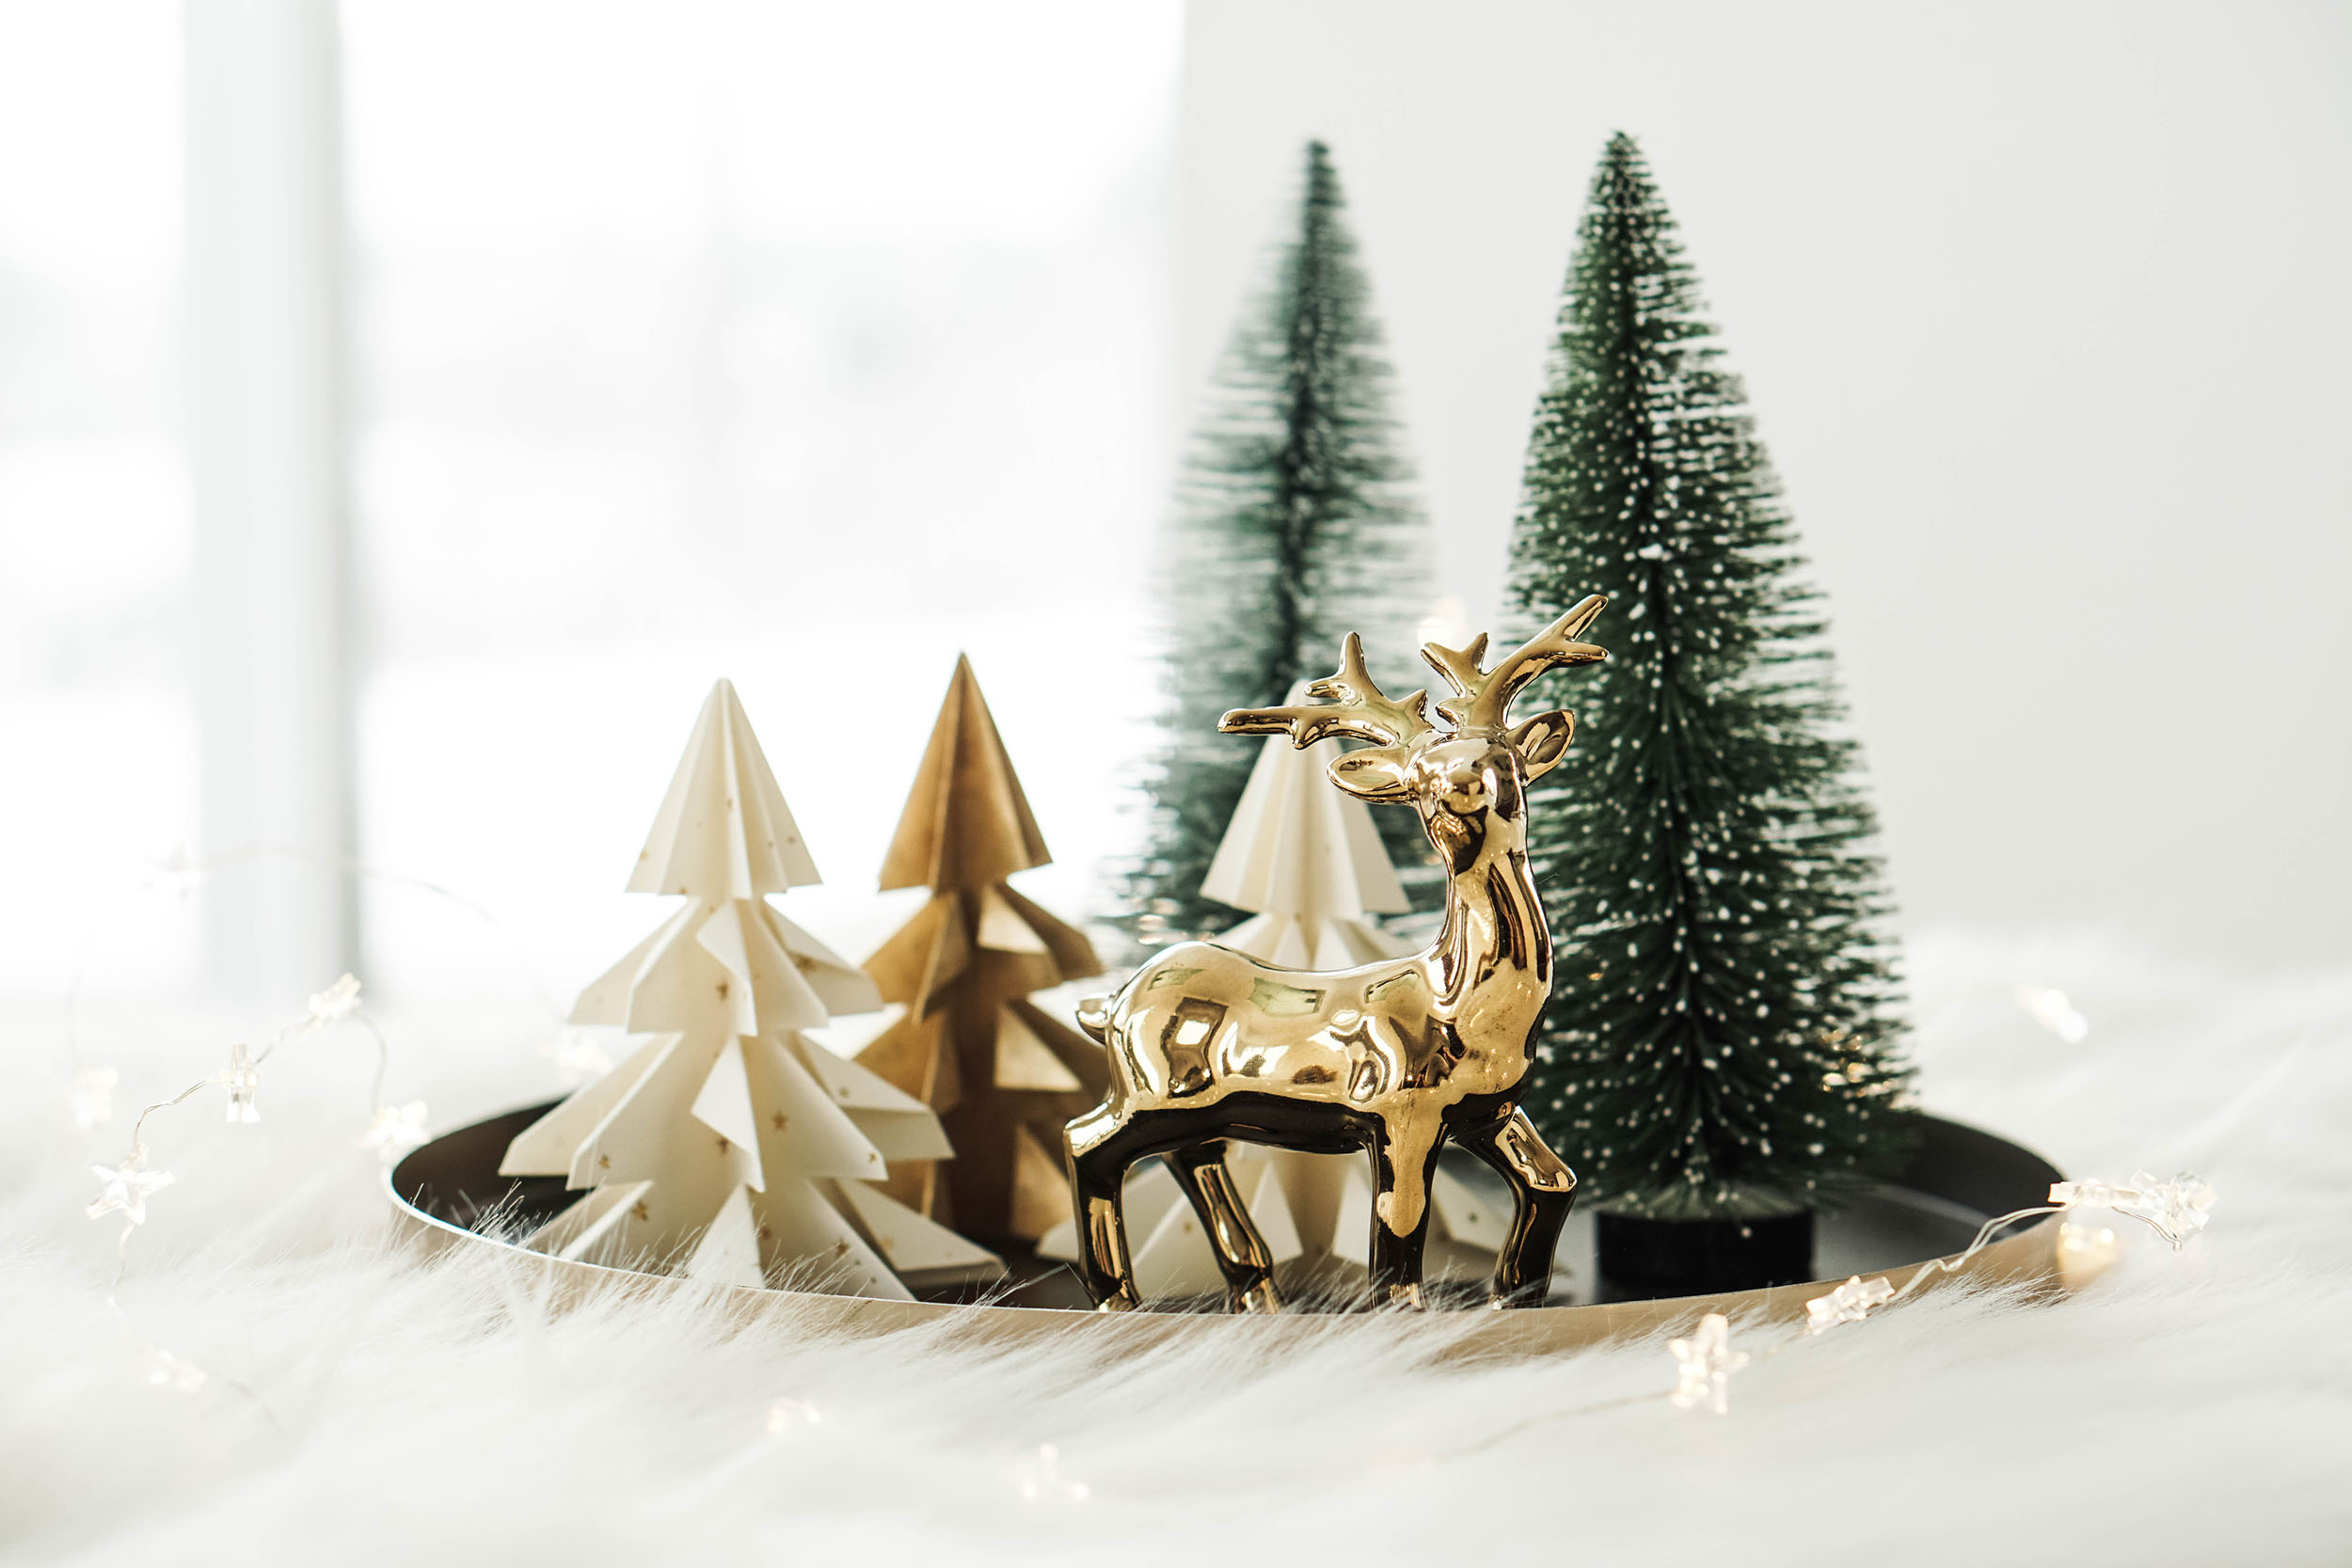 DIY Weihnachtsdeko – Origami Christbäume falten – DIY Weihnachtsschmuck selbstgemacht.jpg